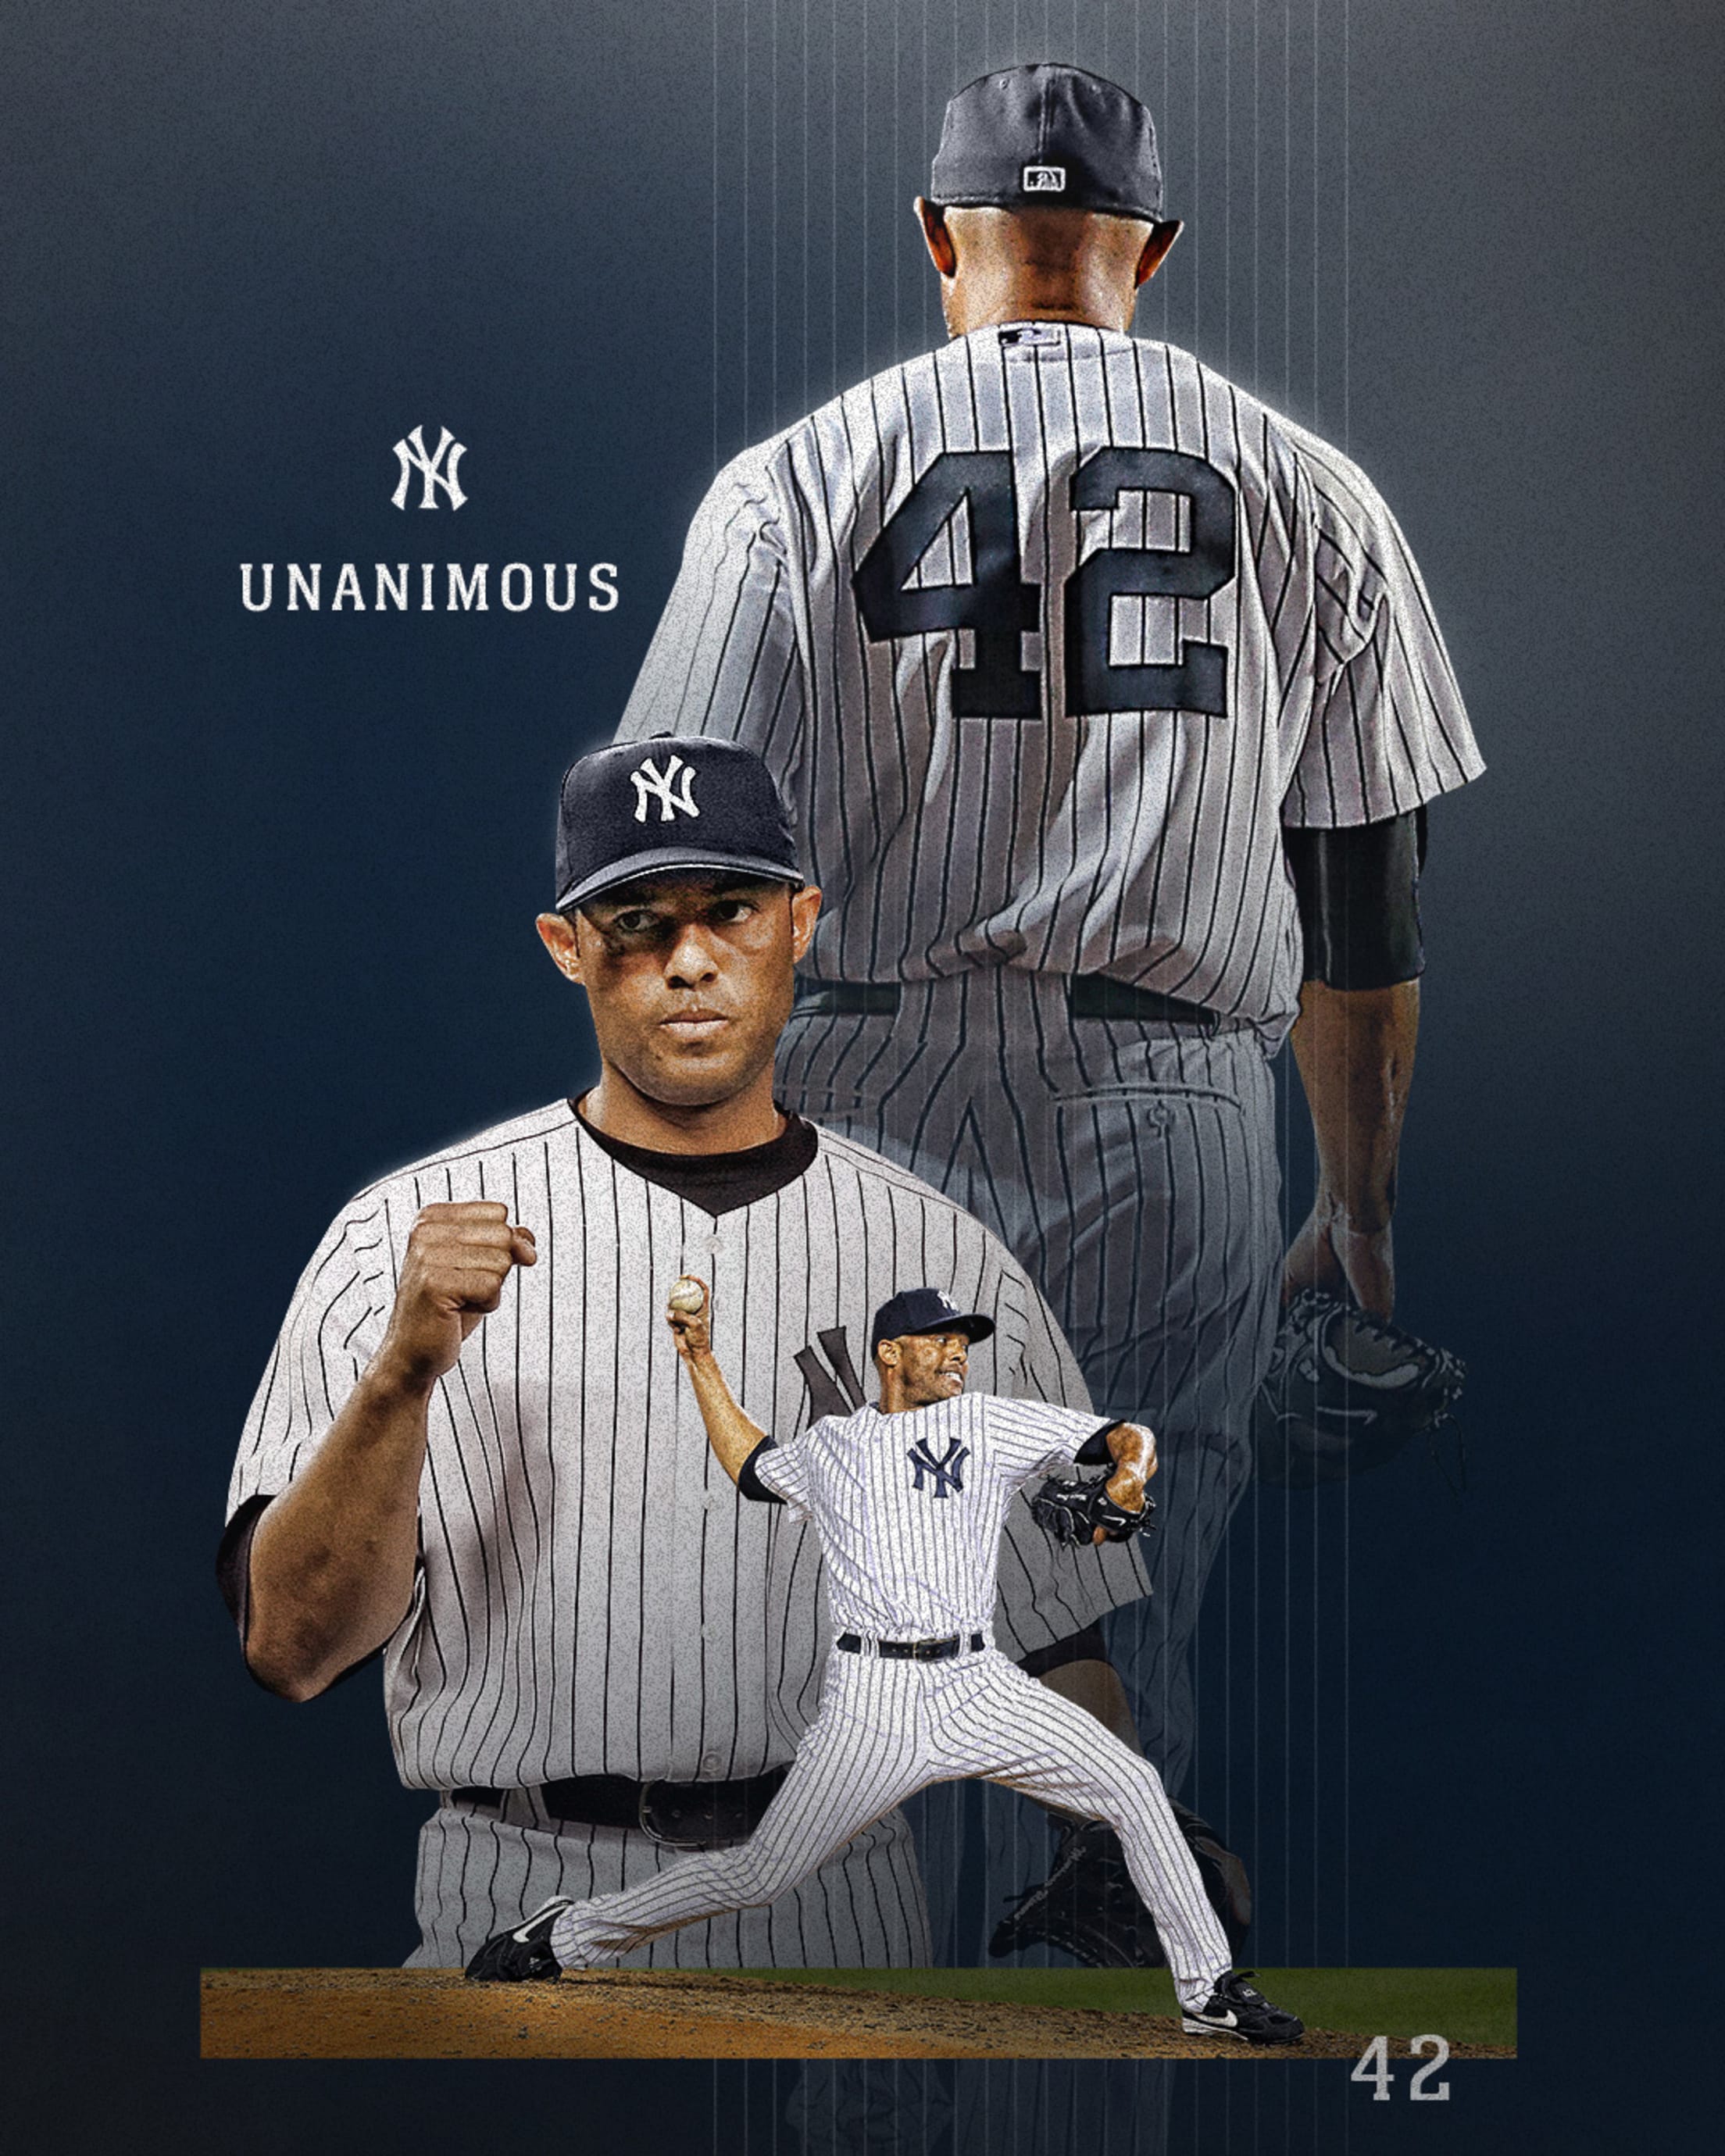 New York Yankees 2022 Wallpapers - Wallpaper Cave